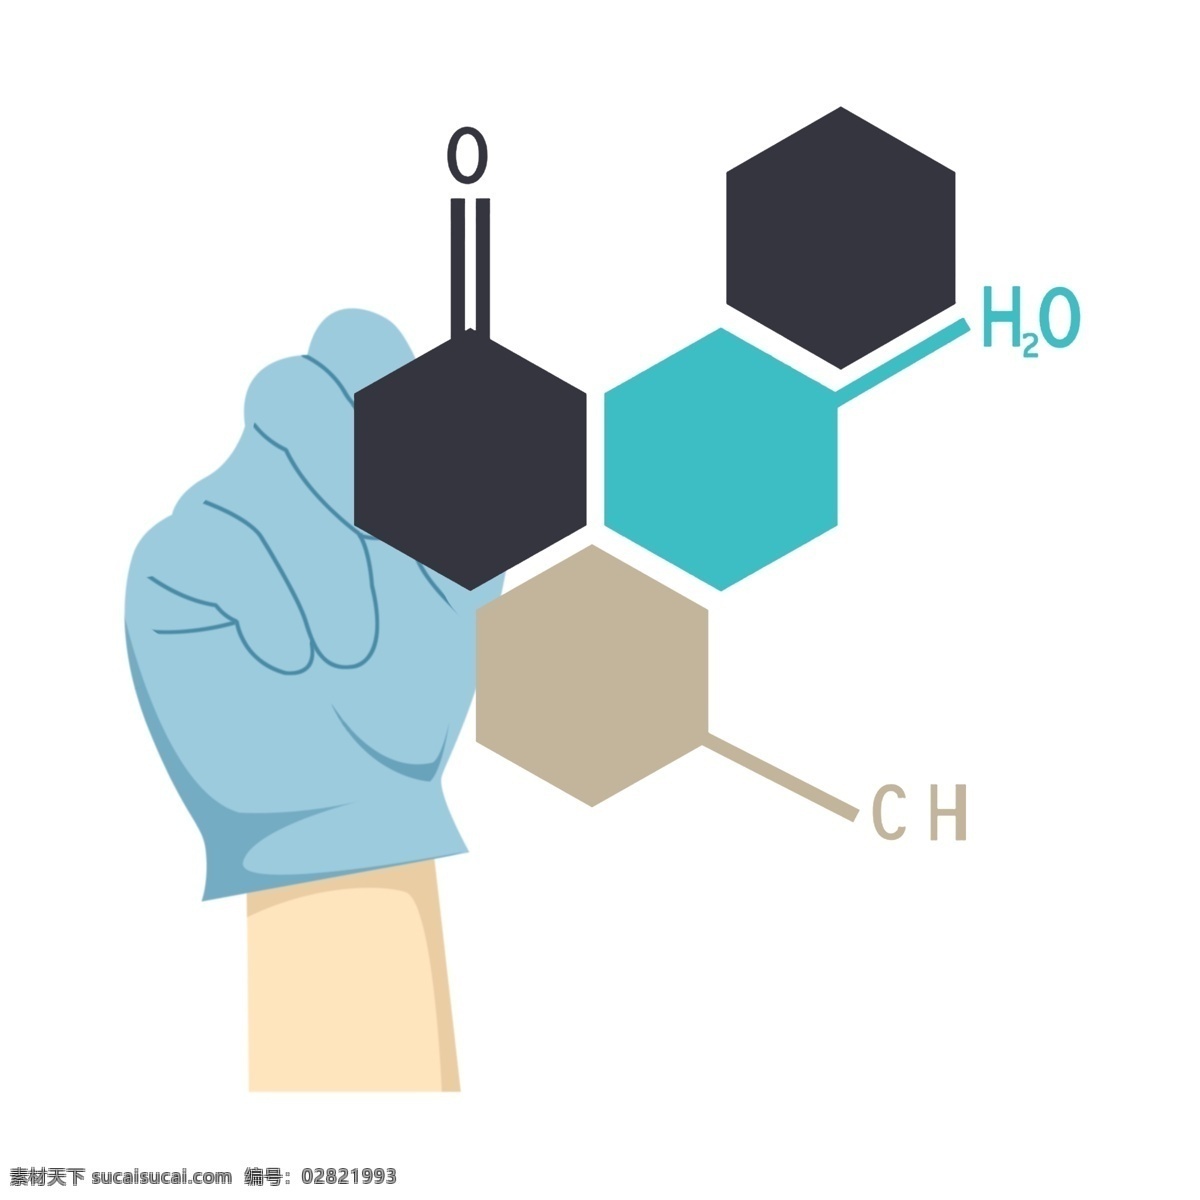 卡通化 学 实验室 插图 化学实用 实验室用品 操作的手 蓝色手套 化学分子 分子图案 化学方程式 科技实验